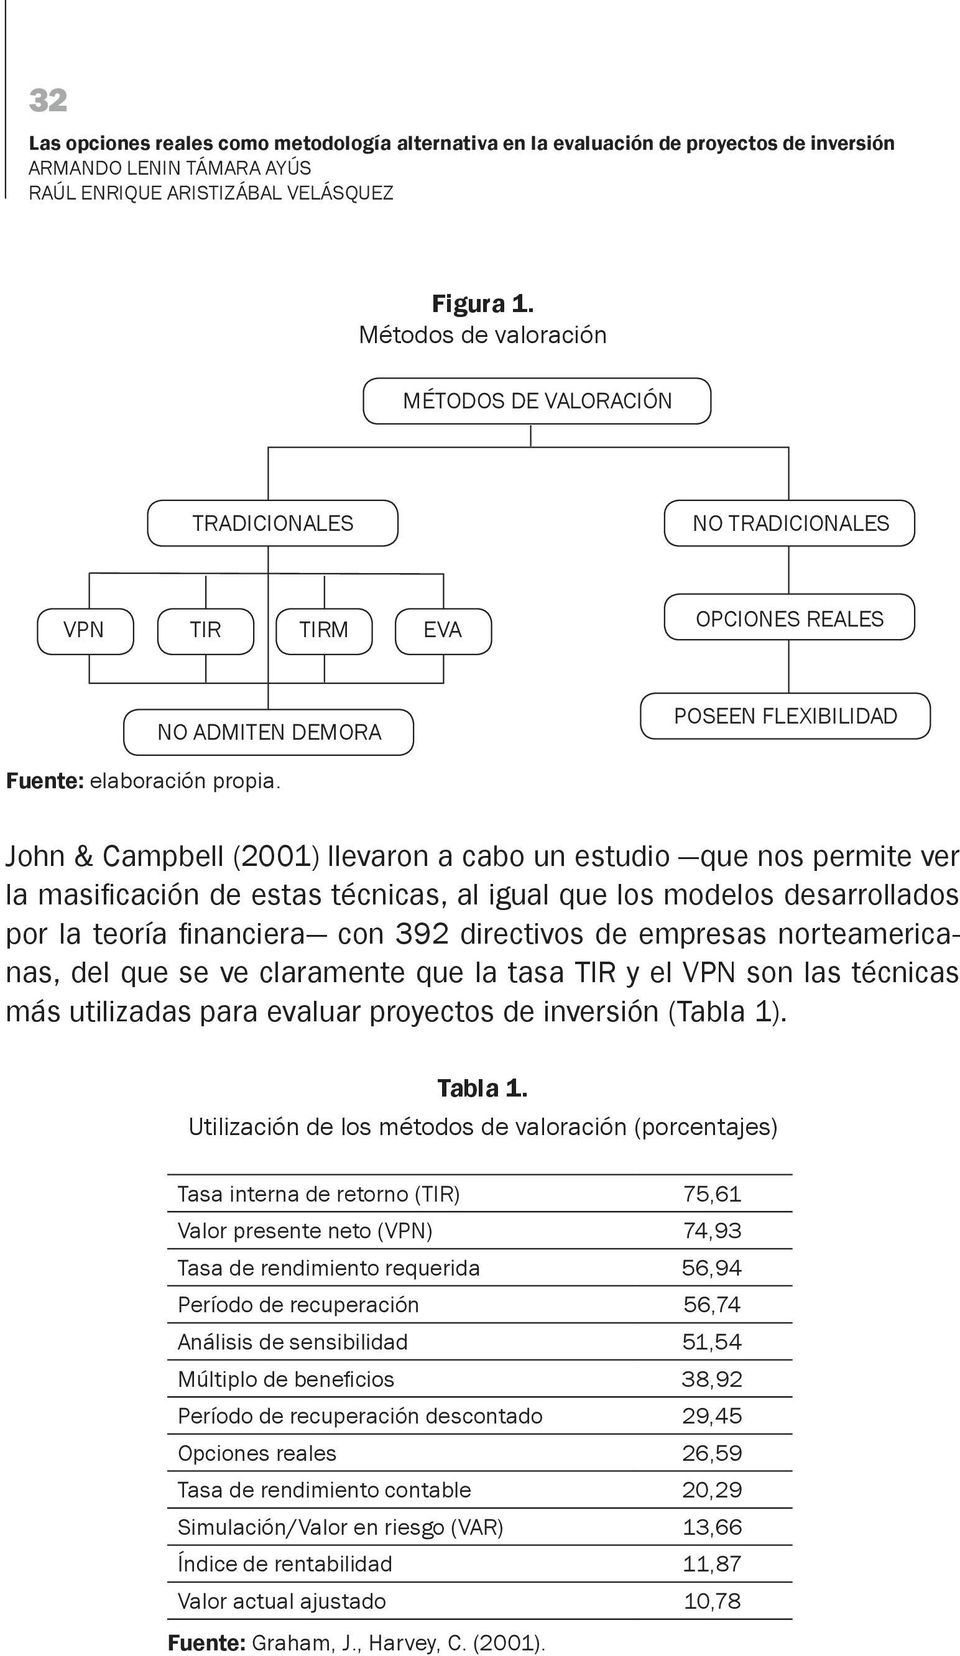 John & Campbell (2001) llevaron a cabo un estudio que nos permite ver la masificación de estas técnicas, al igual que los modelos desarrollados por la teoría financiera con 392 directivos de empresas